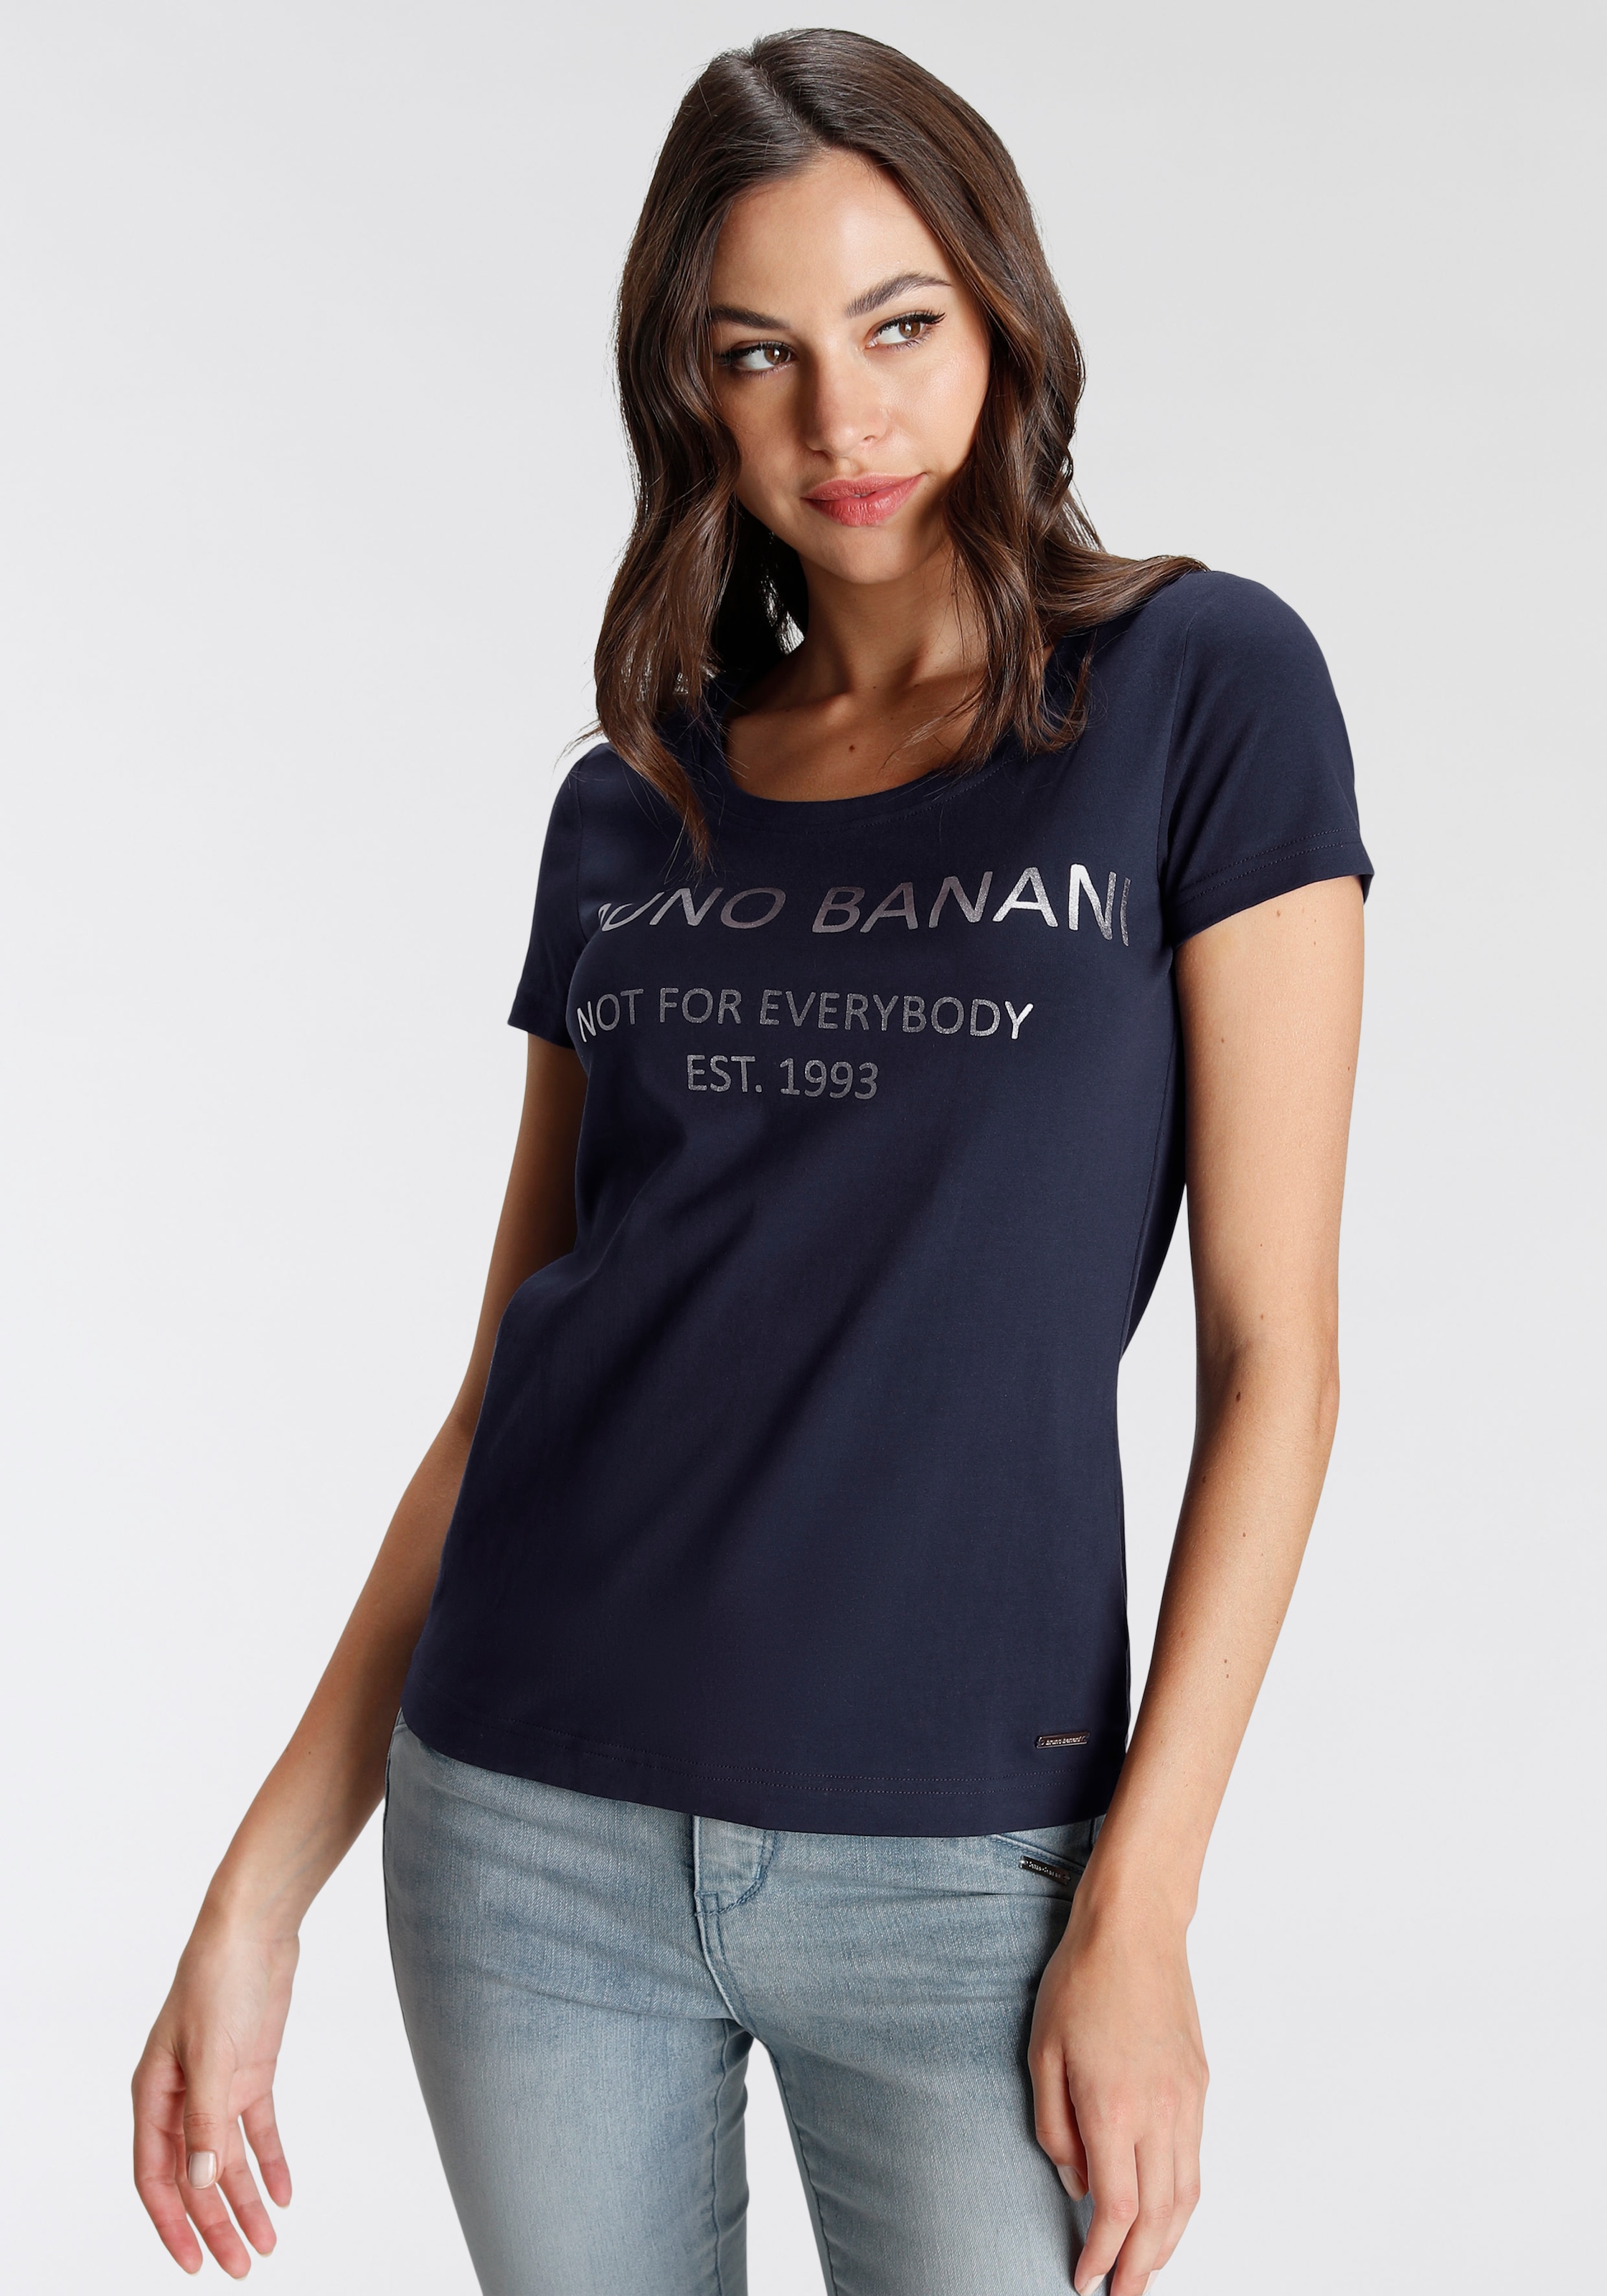 Banani goldfarbenem Bruno NEUE kaufen KOLLEKTION bei mit OTTO T-Shirt, online Logodruck